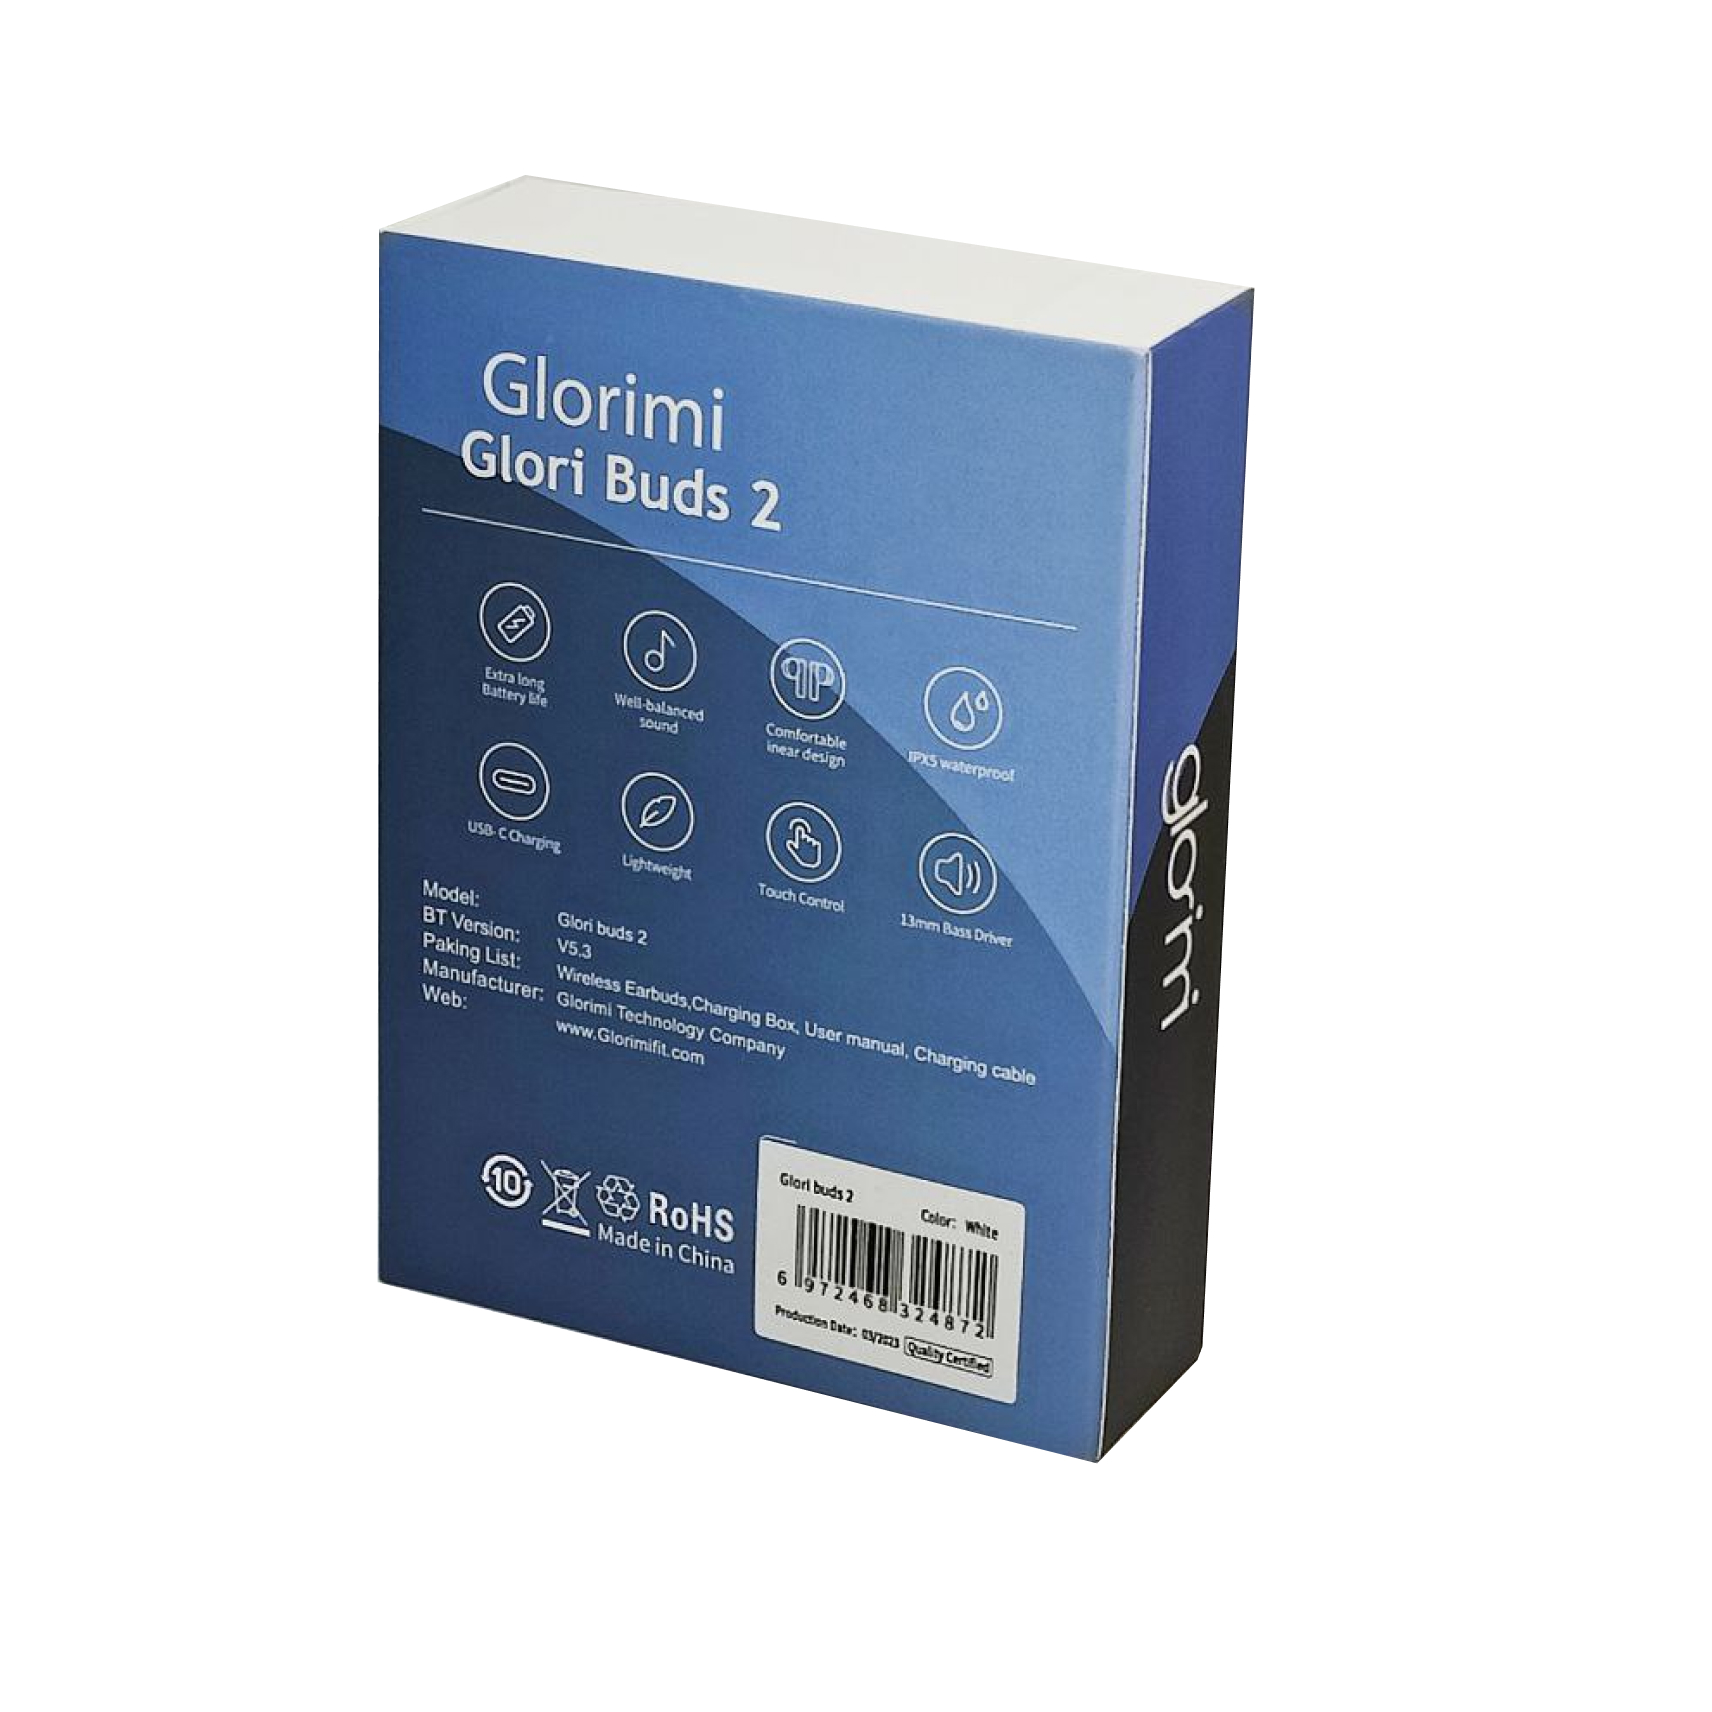 هدفون بی سیم گلوریمی مدل Glori Buds 2 با گارانتی ۱۸ ماه شرکتی